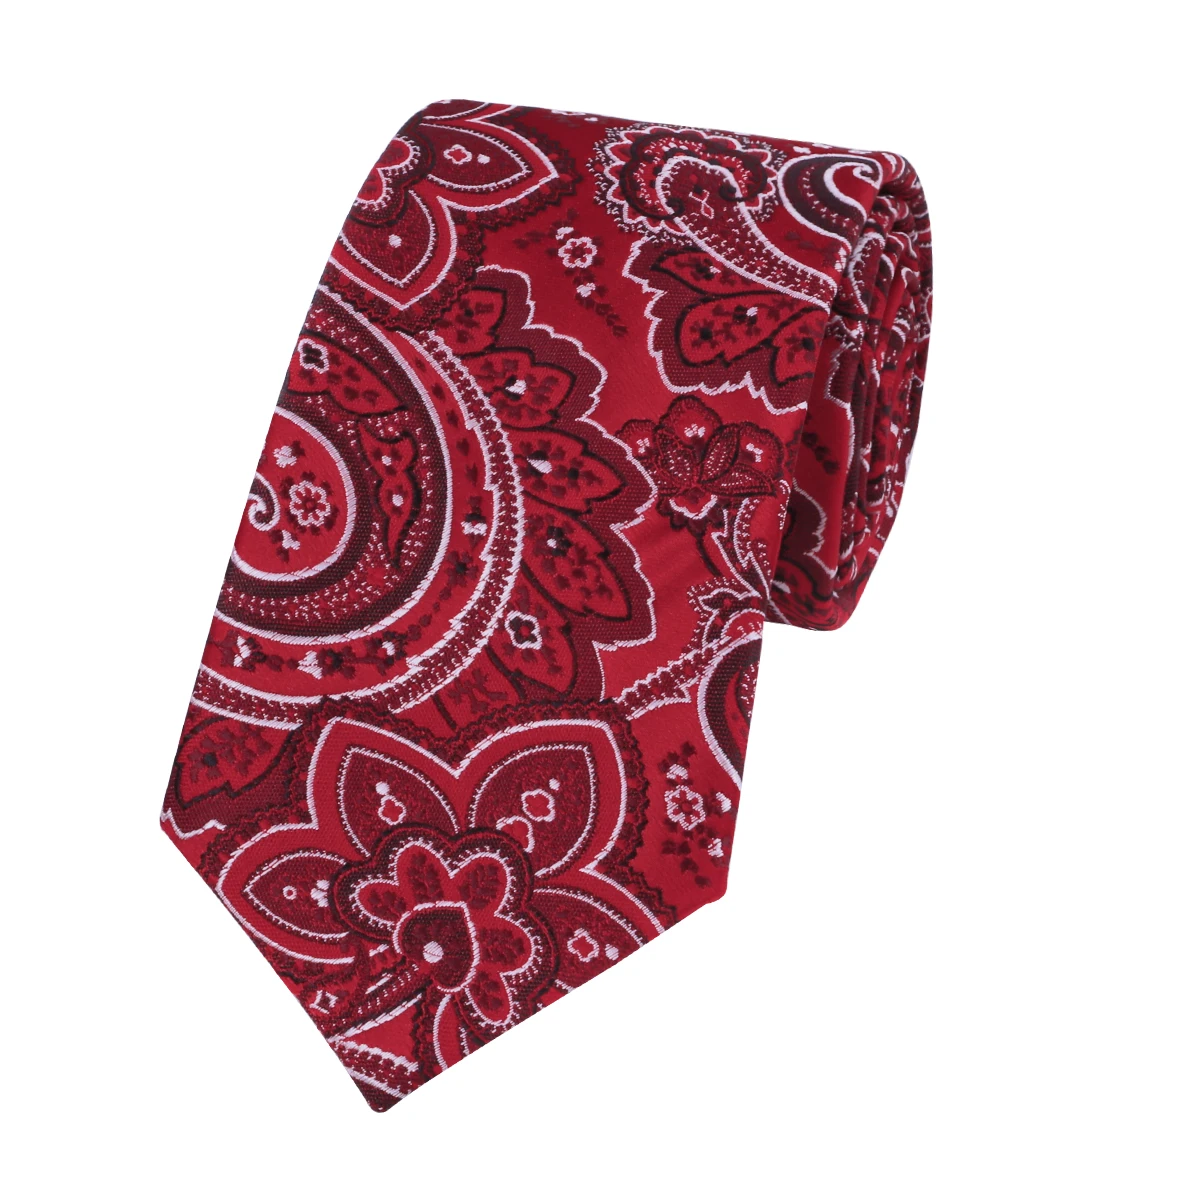 SN-1525 Привет-галстук новый бренд красный Цветочные Галстуки для Для мужчин высокое качество, поступления 2016 г. Gravatas запонки галстук мода